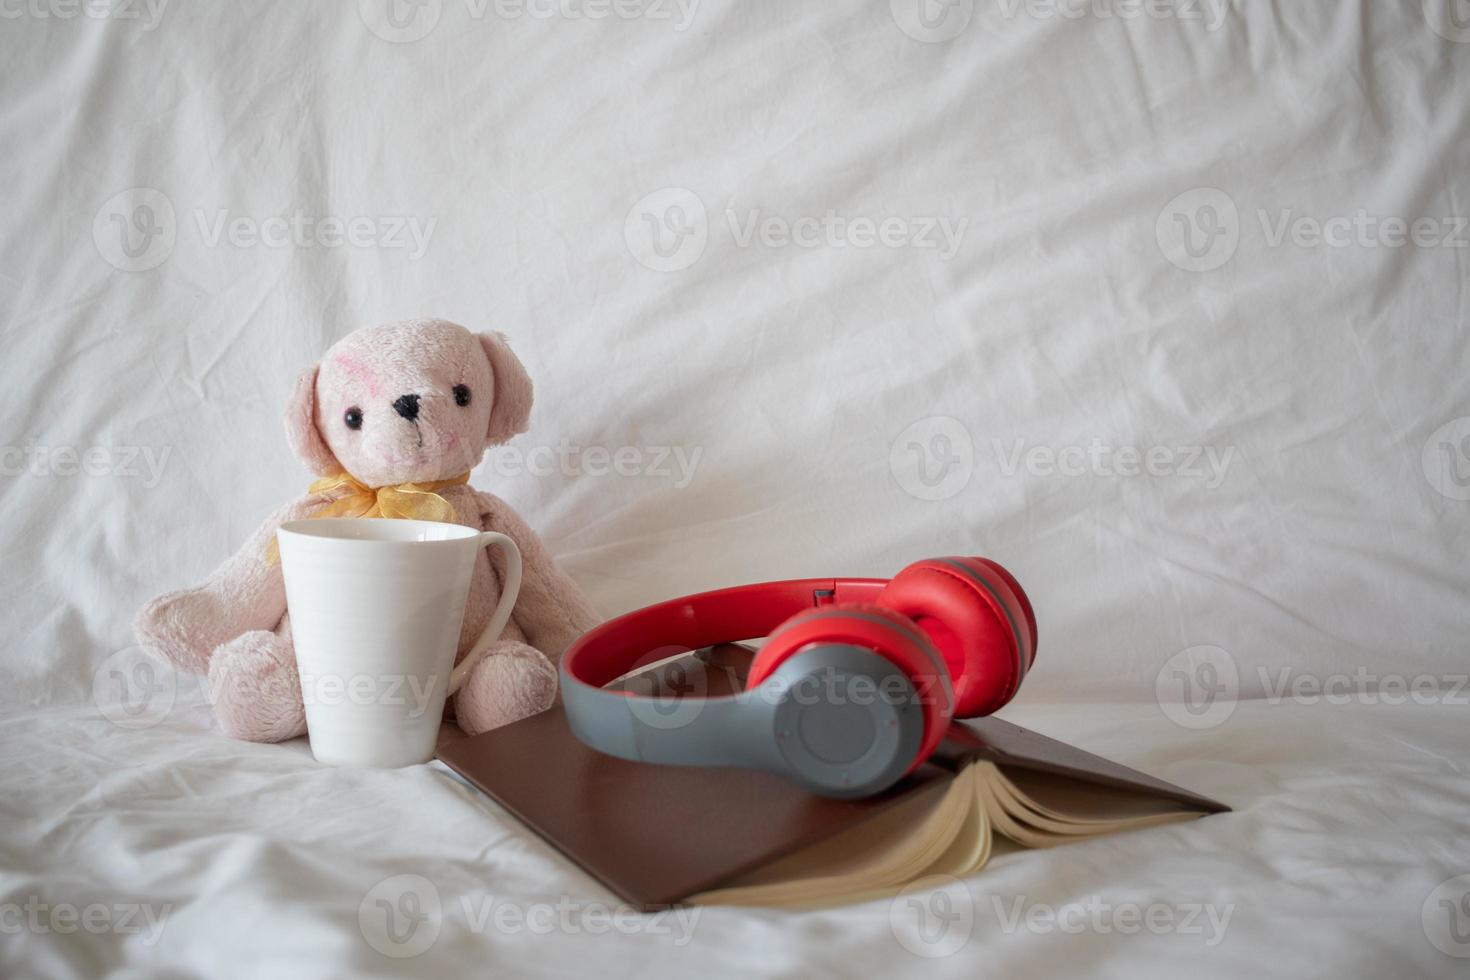 un casque rouge est placé sur un livre près d'un ours en peluche rose sur le lit le matin, prêt pour un repos confortable. une paire d'écouteurs et un livre reposent sur la literie blanche de la chambre. photo